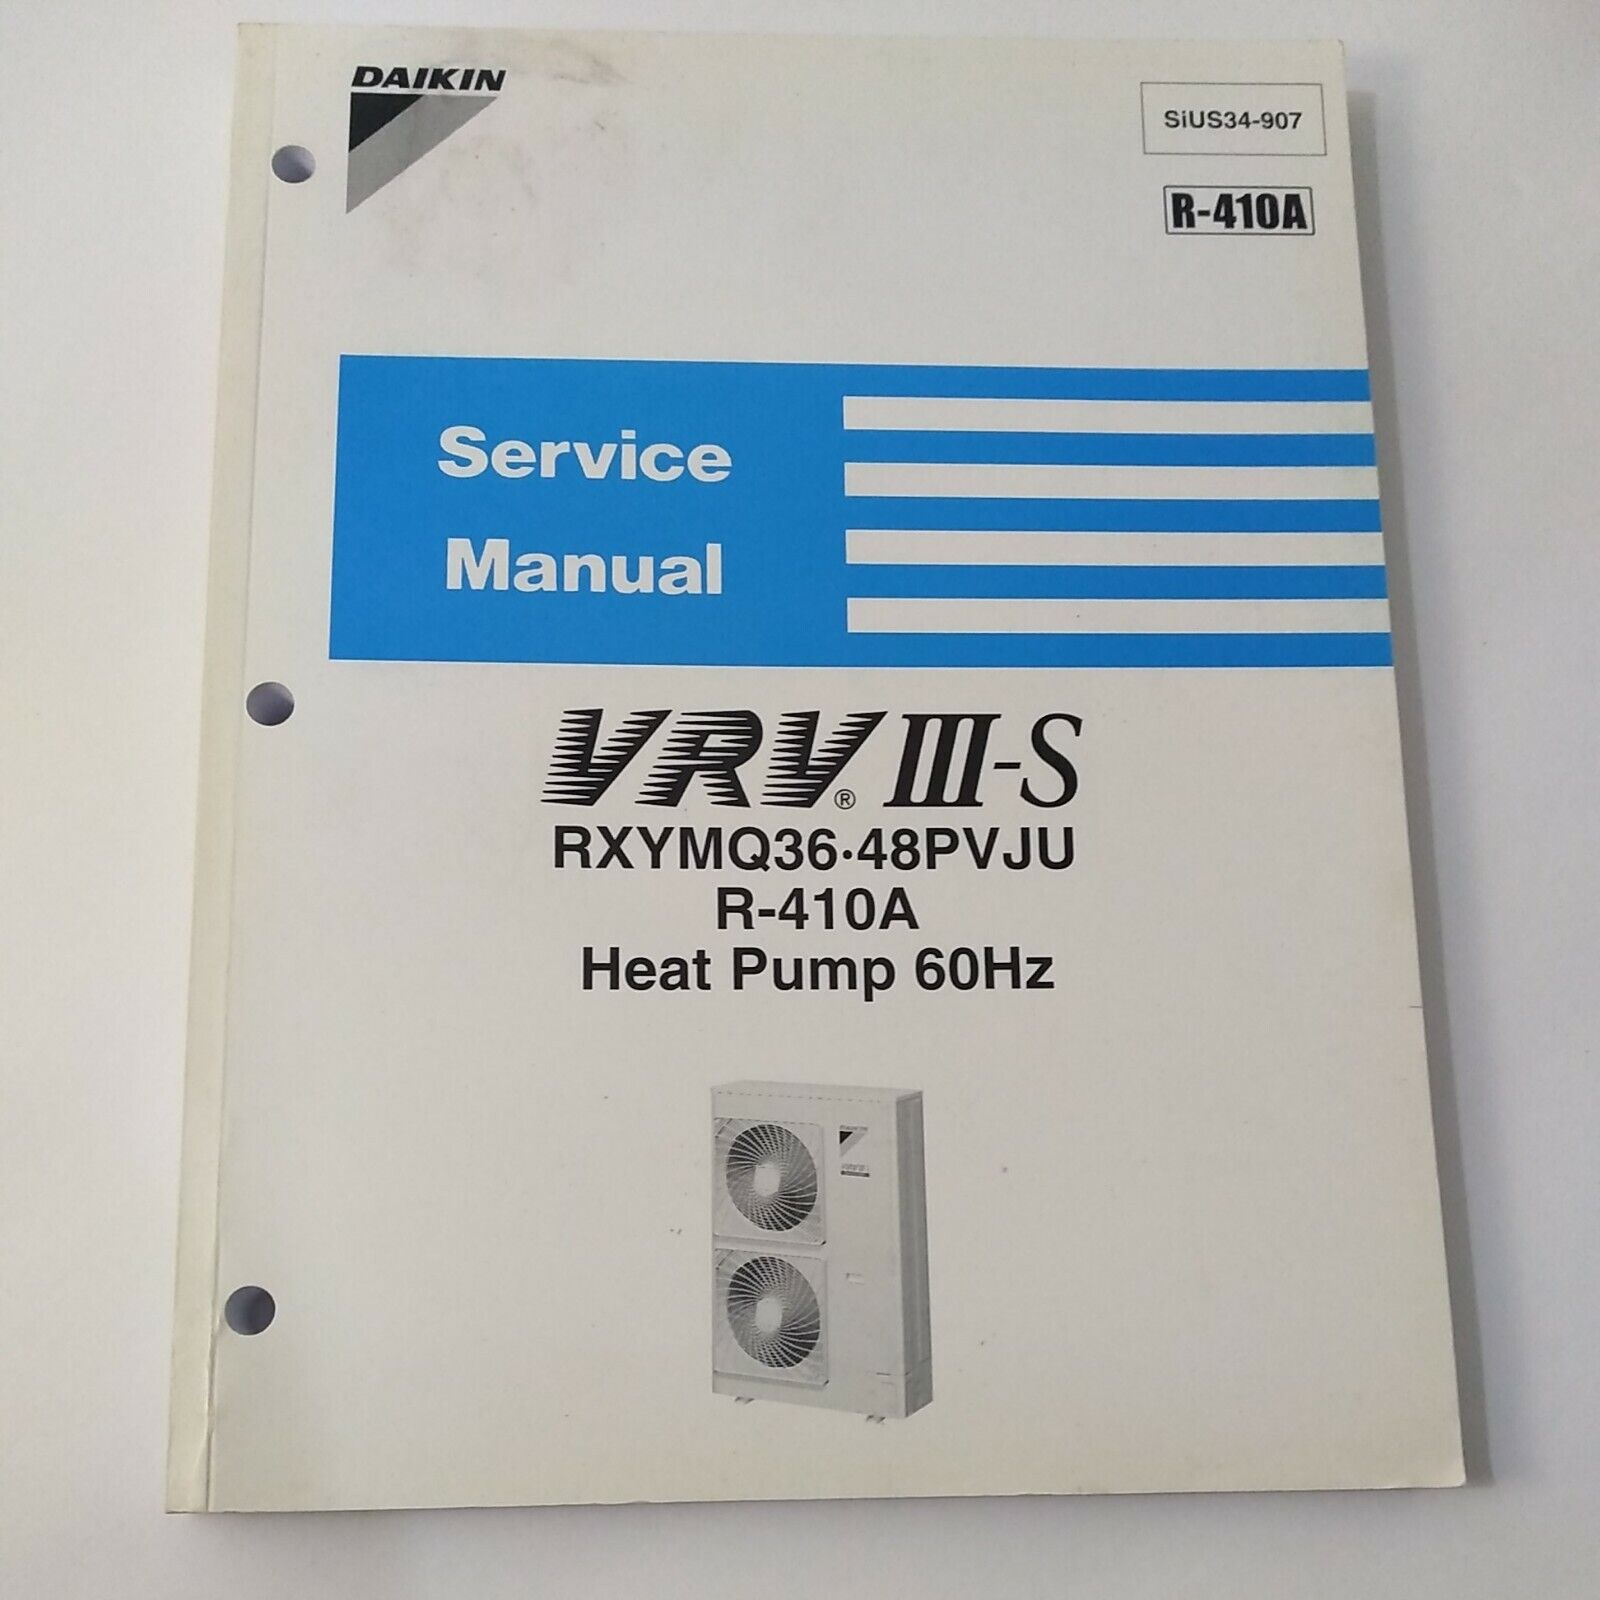 Daikin VRV III-S SiUS34-907 R-410A Service Manual Heat Pump